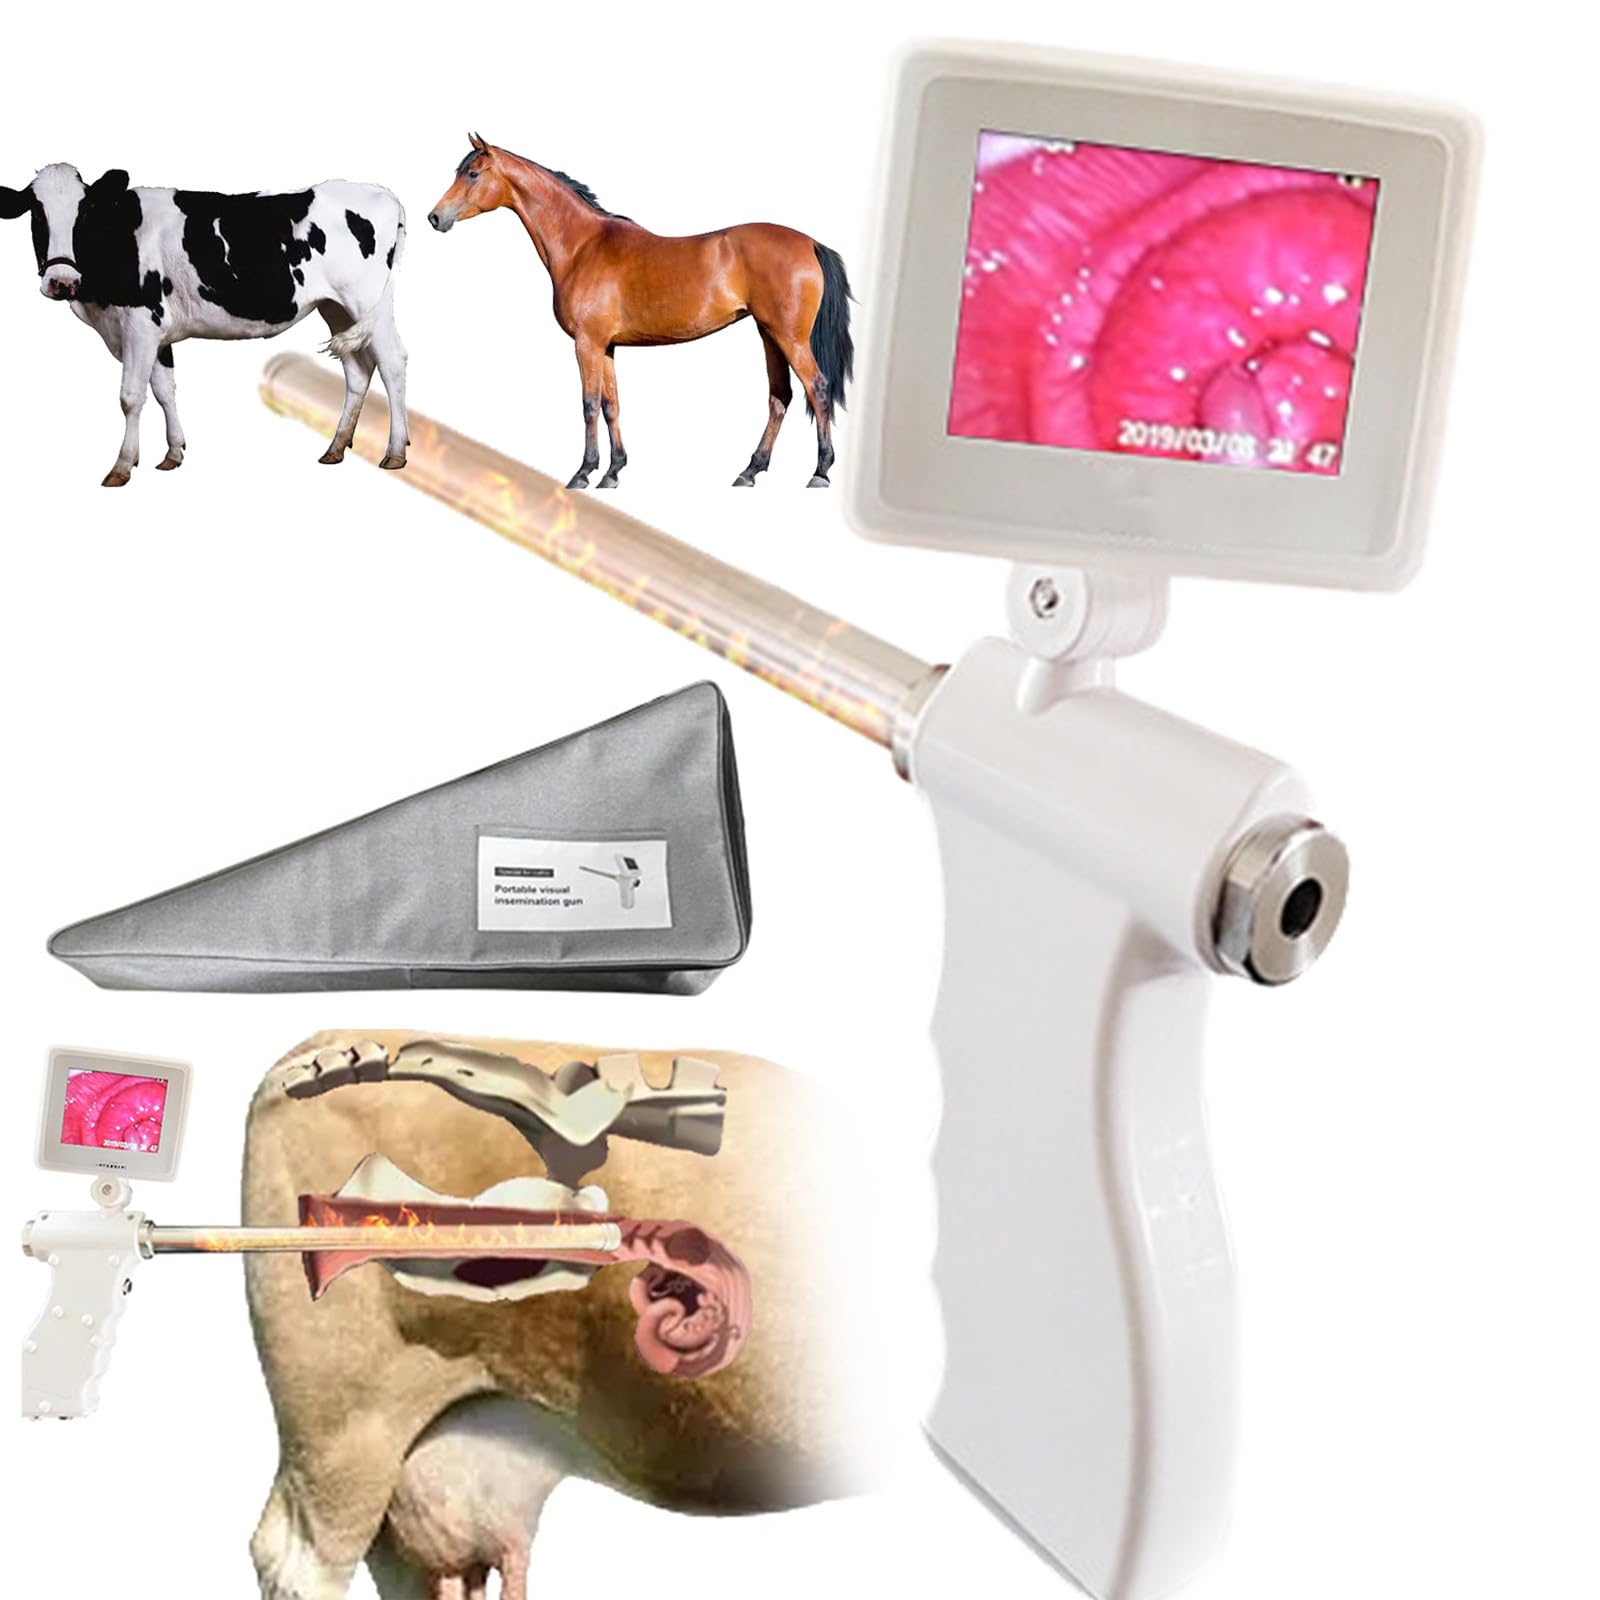 SATSAT Kit zur künstlichen Befruchtung (rotierender Bildschirm), Professionelle visuelle künstliche Befruchtungspistole für Kühe/Rinder, Pferde, Esel, Kamele, Heizung mit konstanter Temperatur